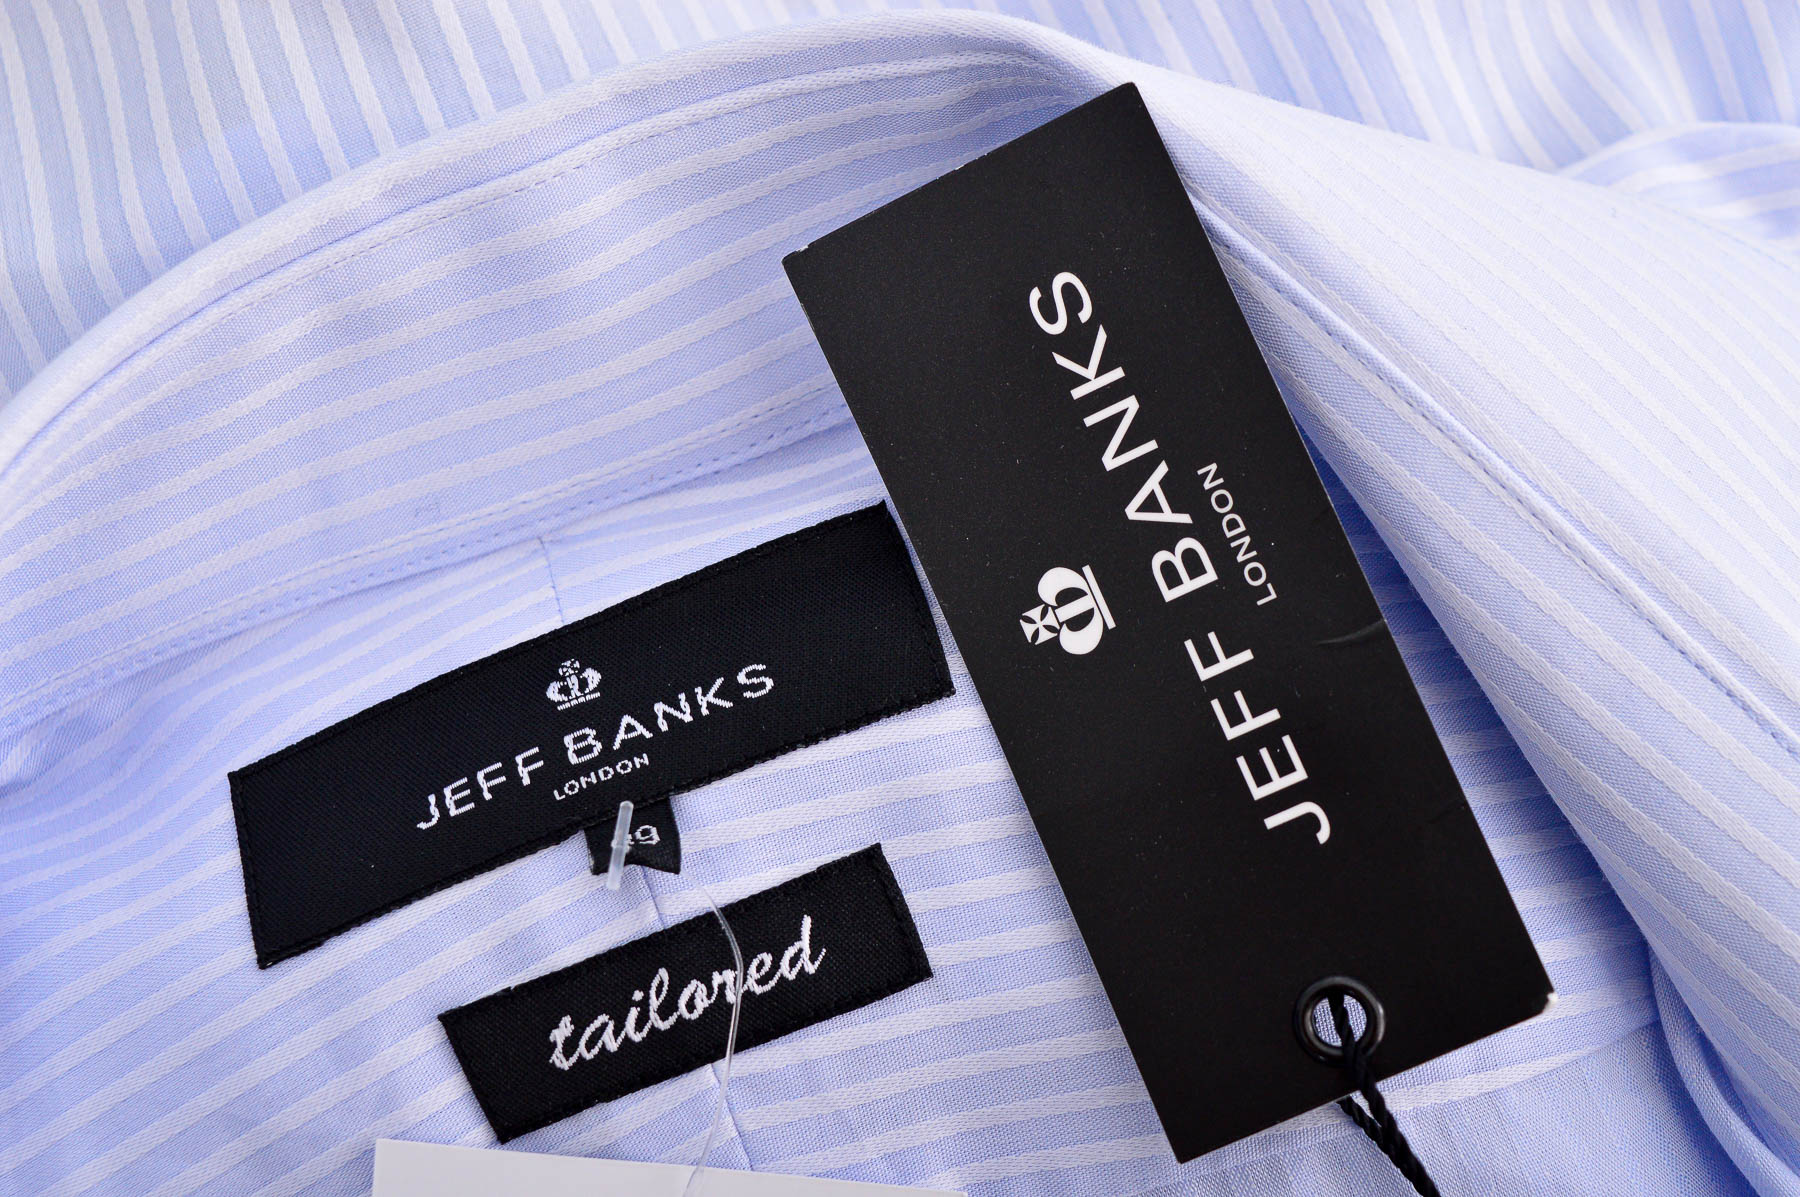 Ανδρικό πουκάμισο - Jeff Banks - 2